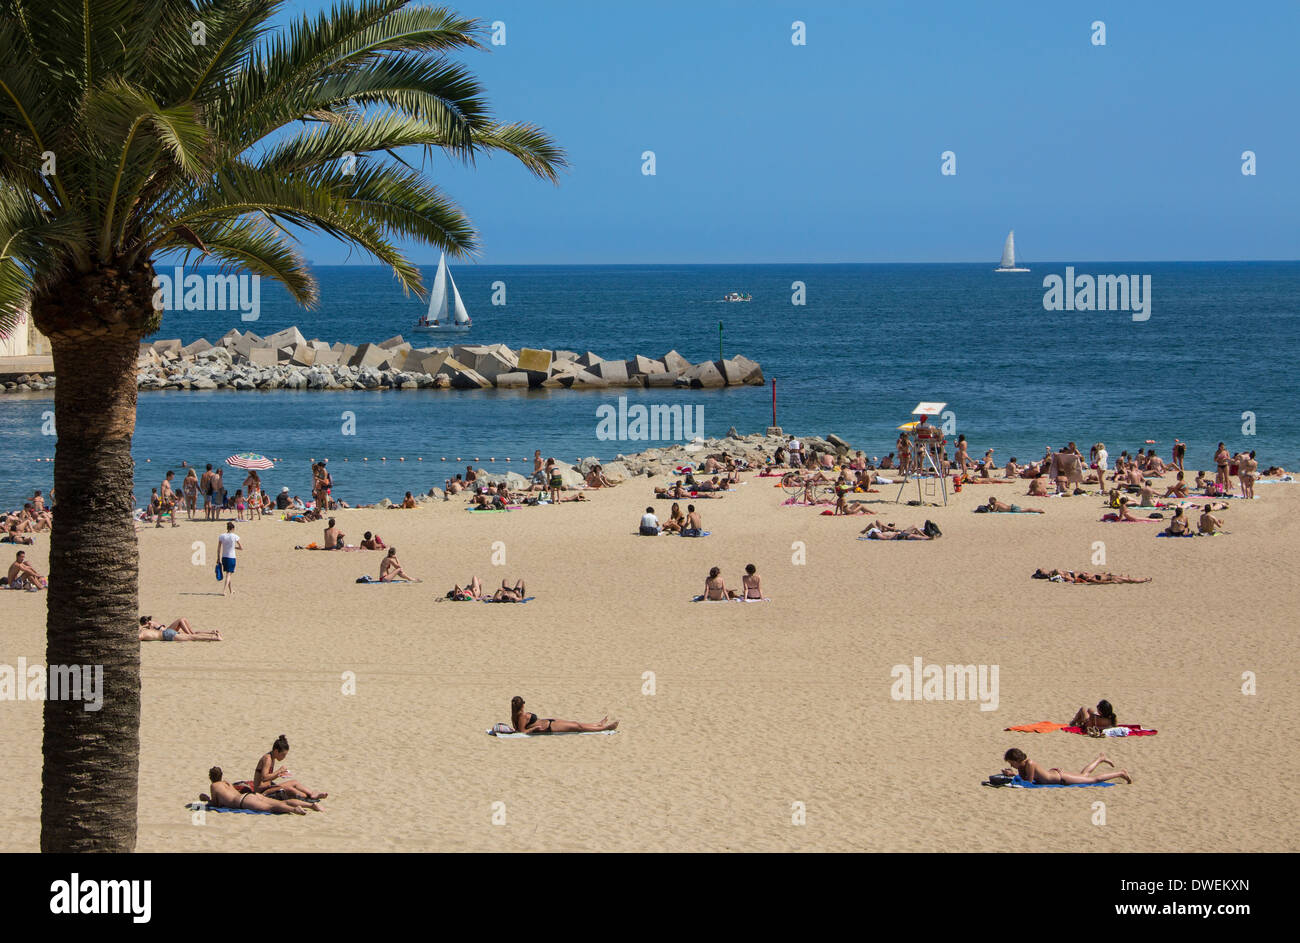 L'une des plages de Barcelone (Platja de la Nova Icaria) près du Port Olympique de Barcelone dans la région de Catalogne en Espagne. Banque D'Images